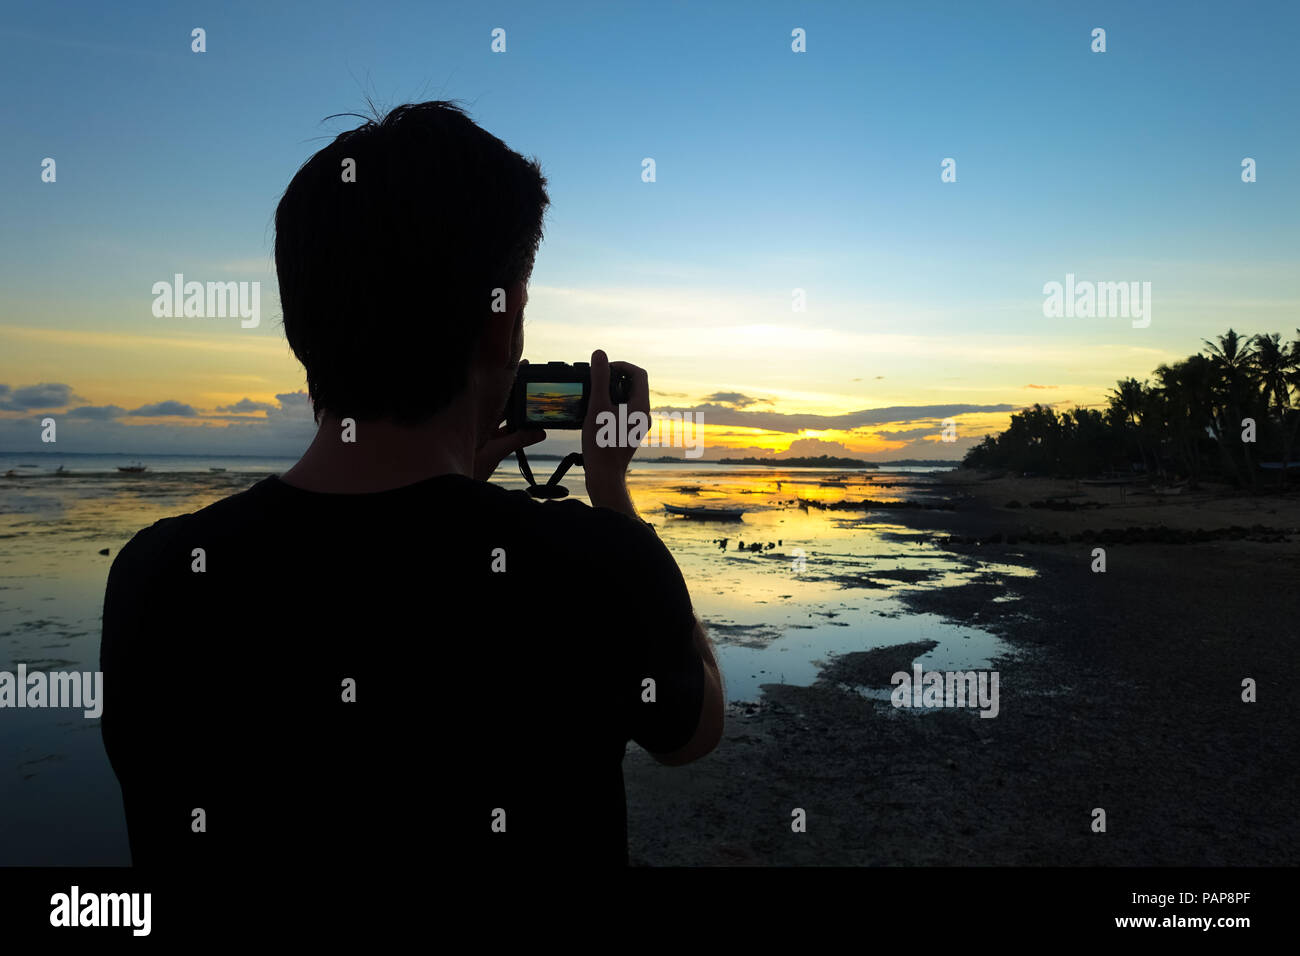 Fotografo uomo con fotocamera, tiro verso il tramonto su una spiaggia durante la vacanza isola - Boracay, Aklan - Filippine Foto Stock